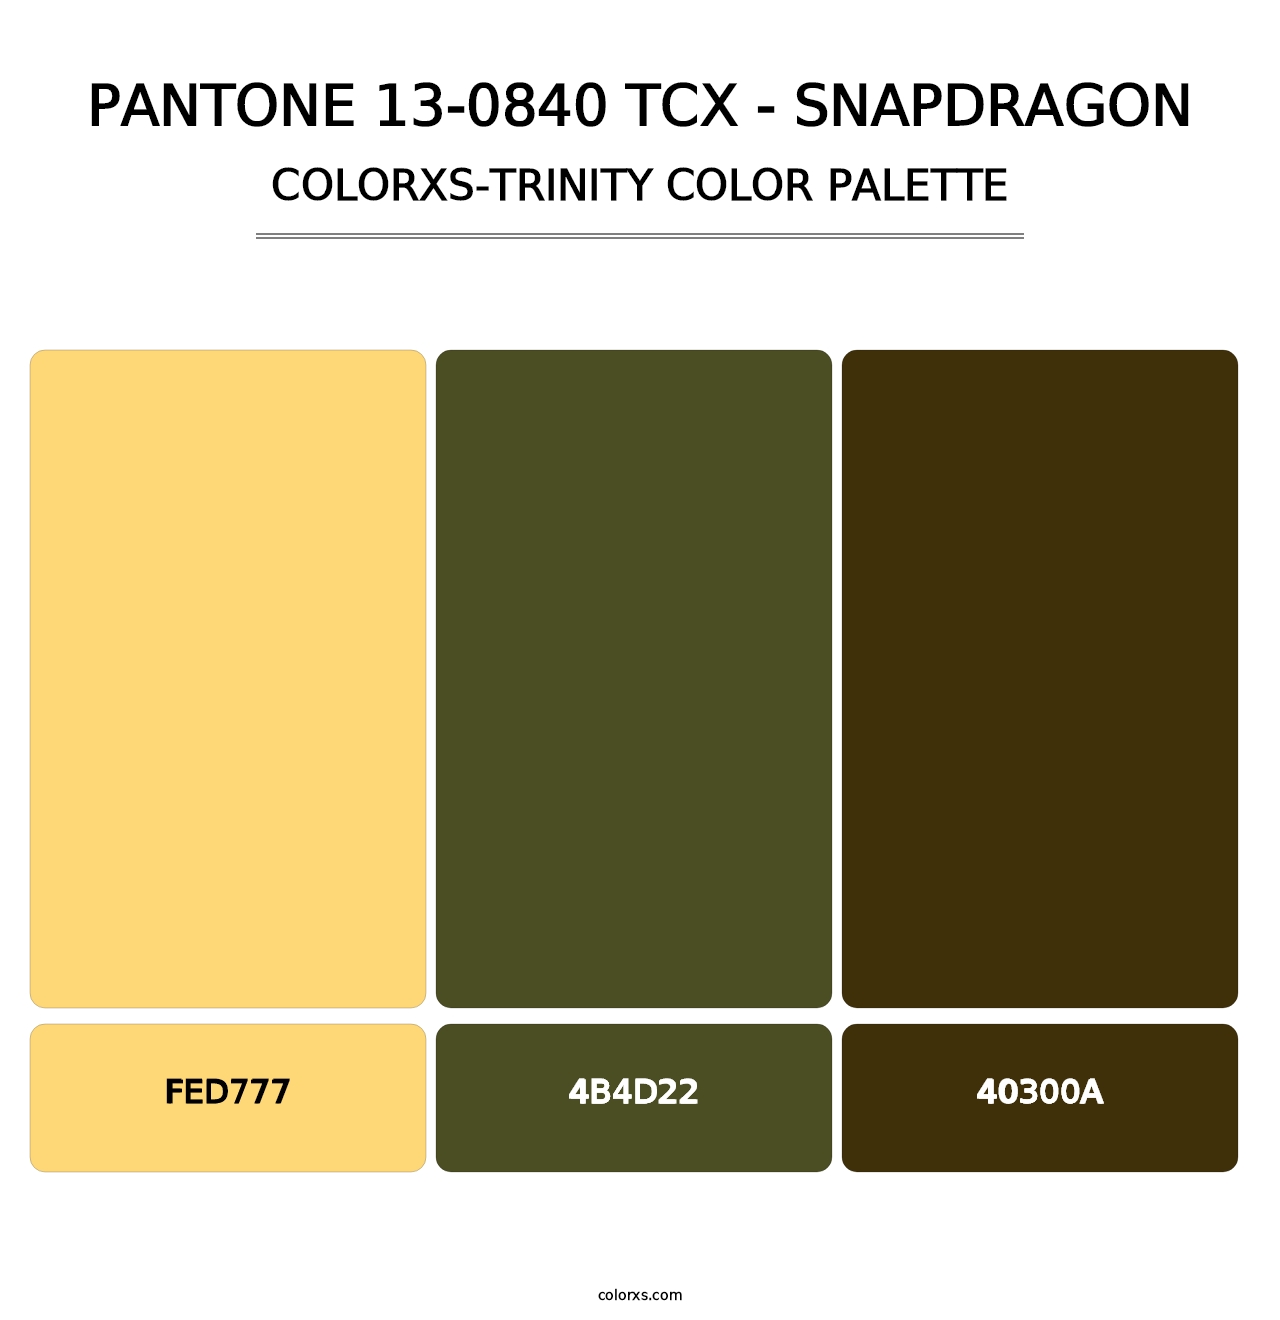 PANTONE 13-0840 TCX - Snapdragon - Colorxs Trinity Palette